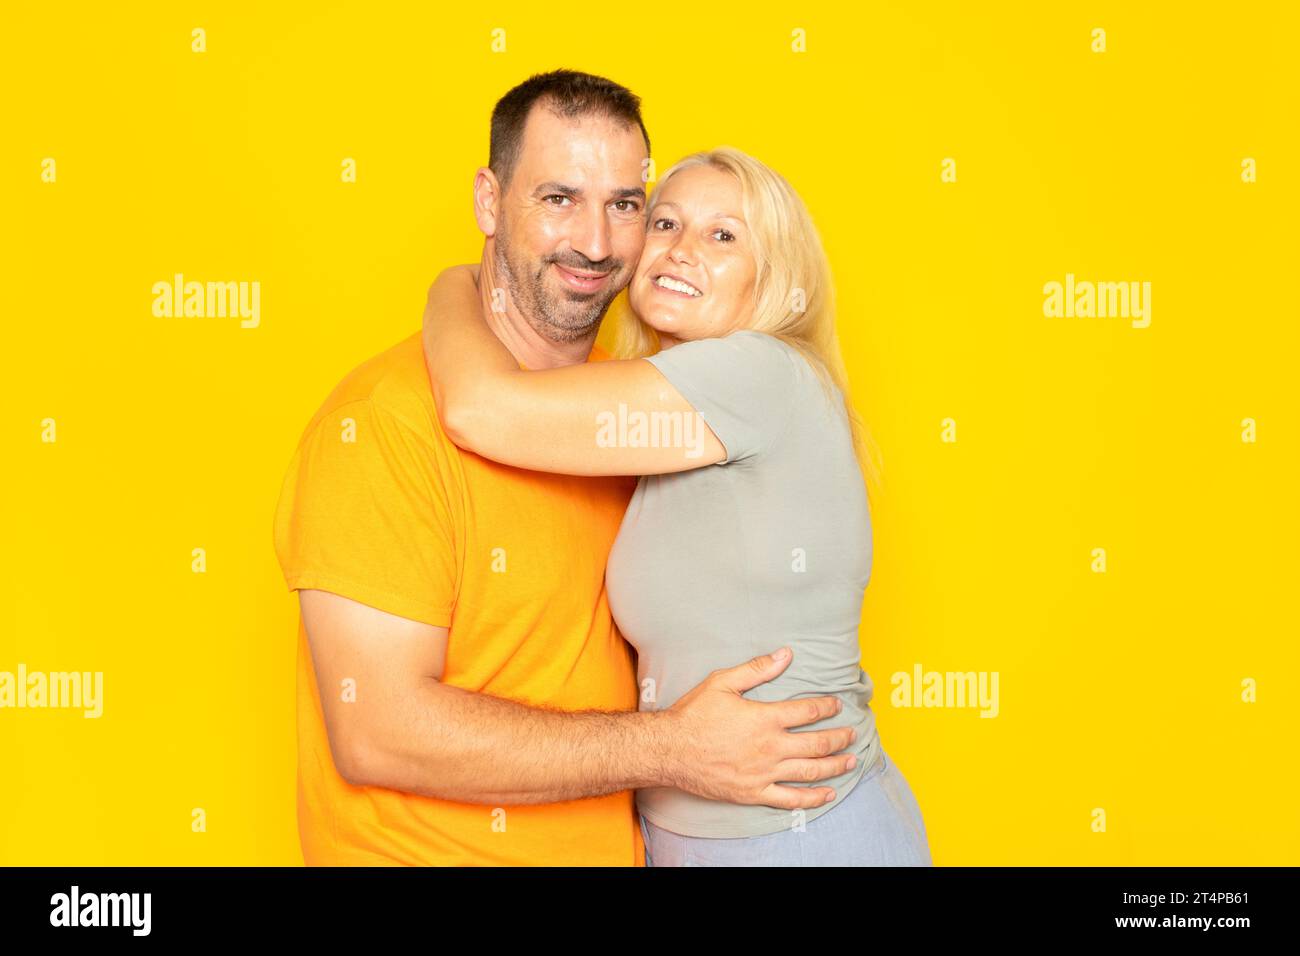 Real pareja caucásica en sus 40 años abrazándose tiernamente el uno al otro demostrando su amor y compromiso, aislado en el fondo amarillo. Foto de stock